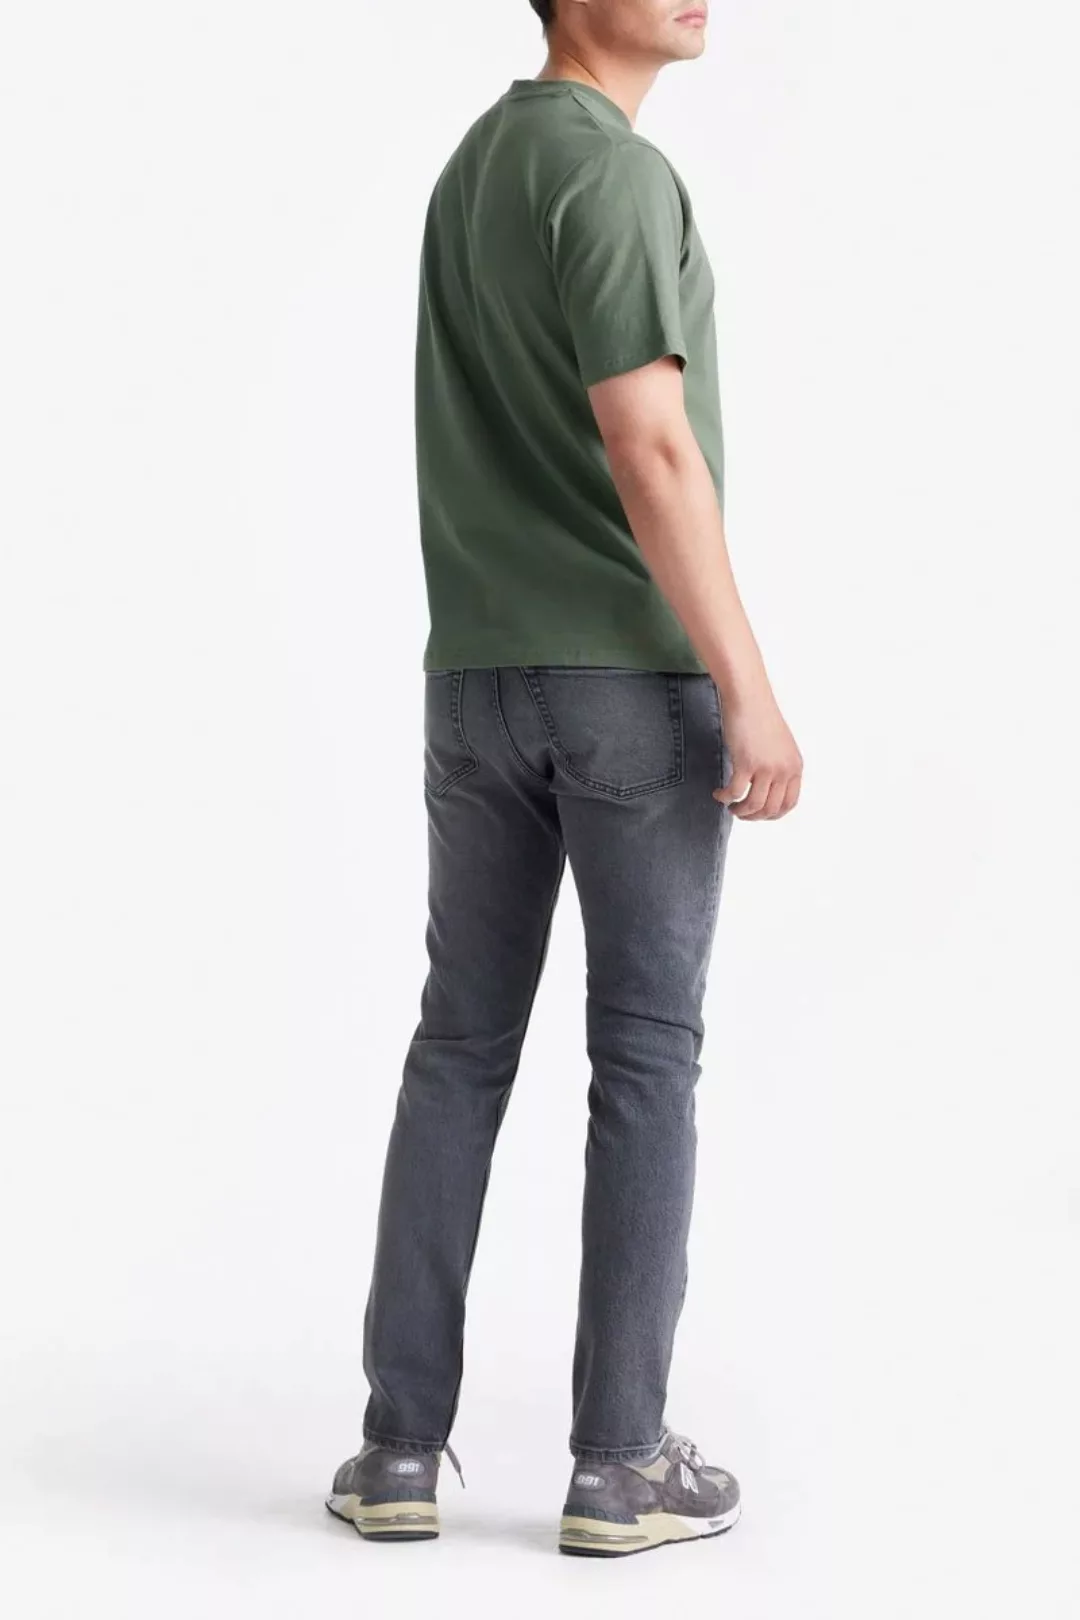 King Essentials The Shawn T-Shirt Olivgrün - Größe M günstig online kaufen